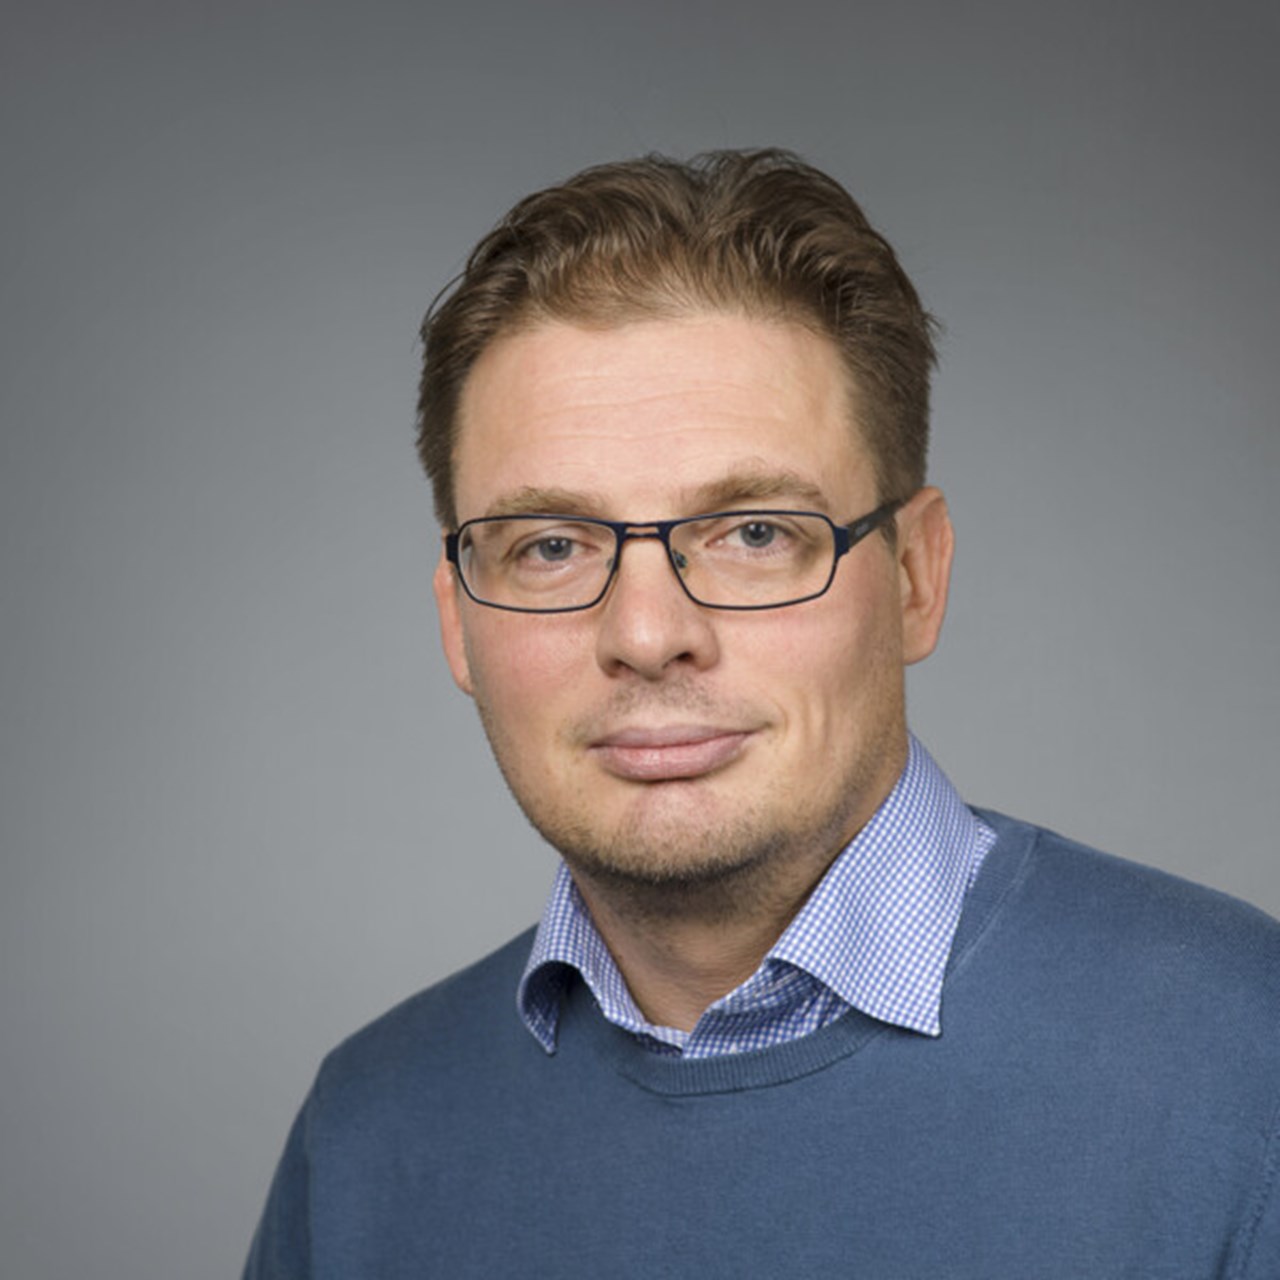 Porträtt på Patrik Ryden, Anknuten som universitetslektor vid Institutionen för matematik och matematisk statistik, Umeå universitet